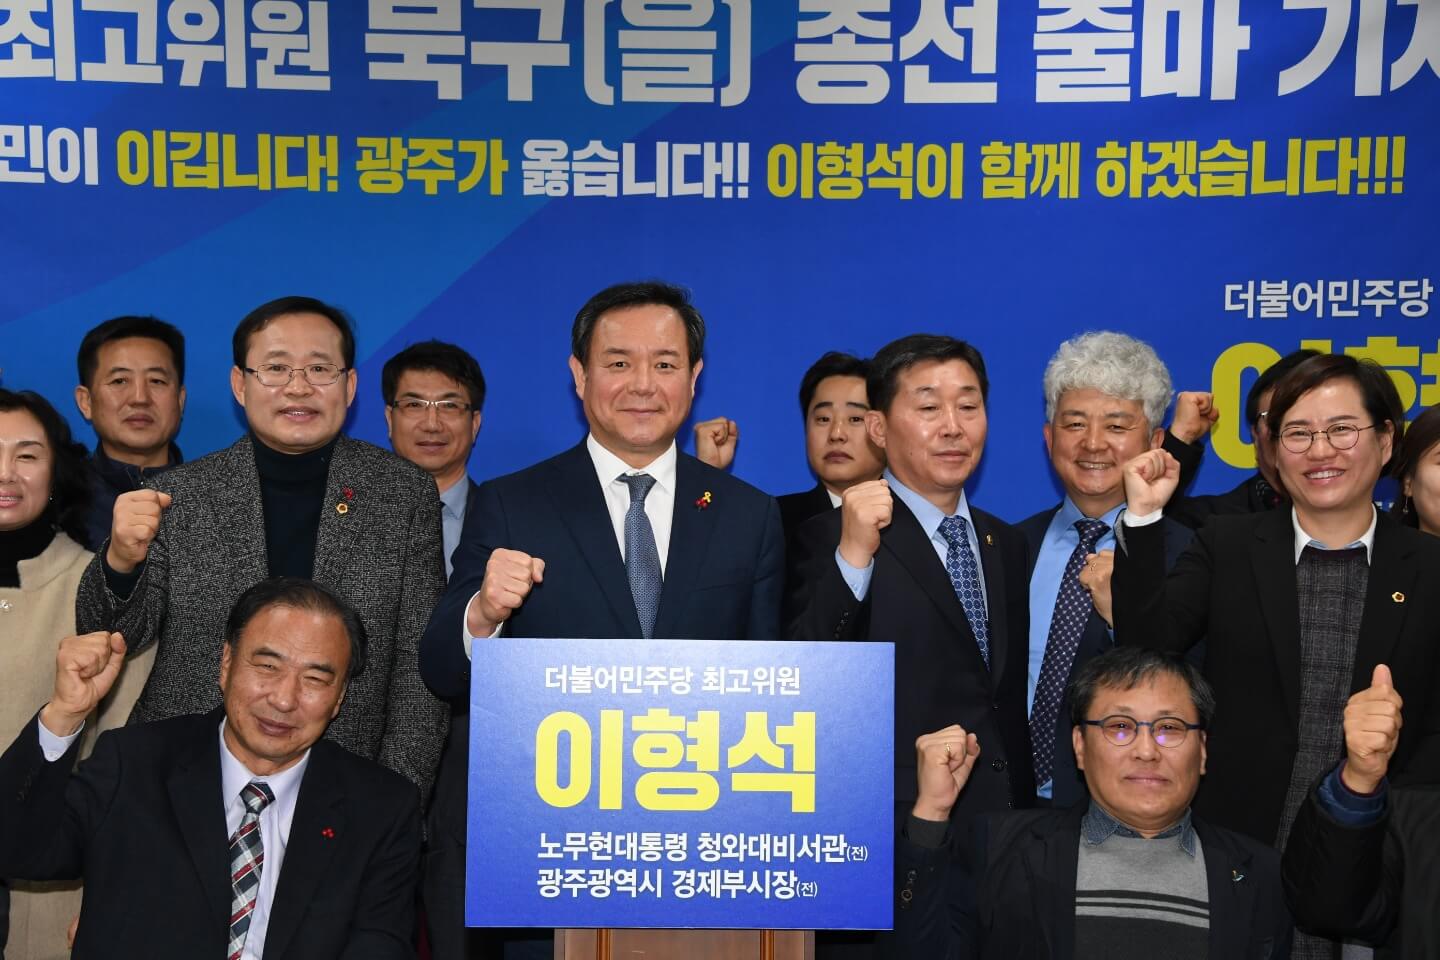 이형석 민주당 최고위원, 내년 광주 북구을 출마 선언 